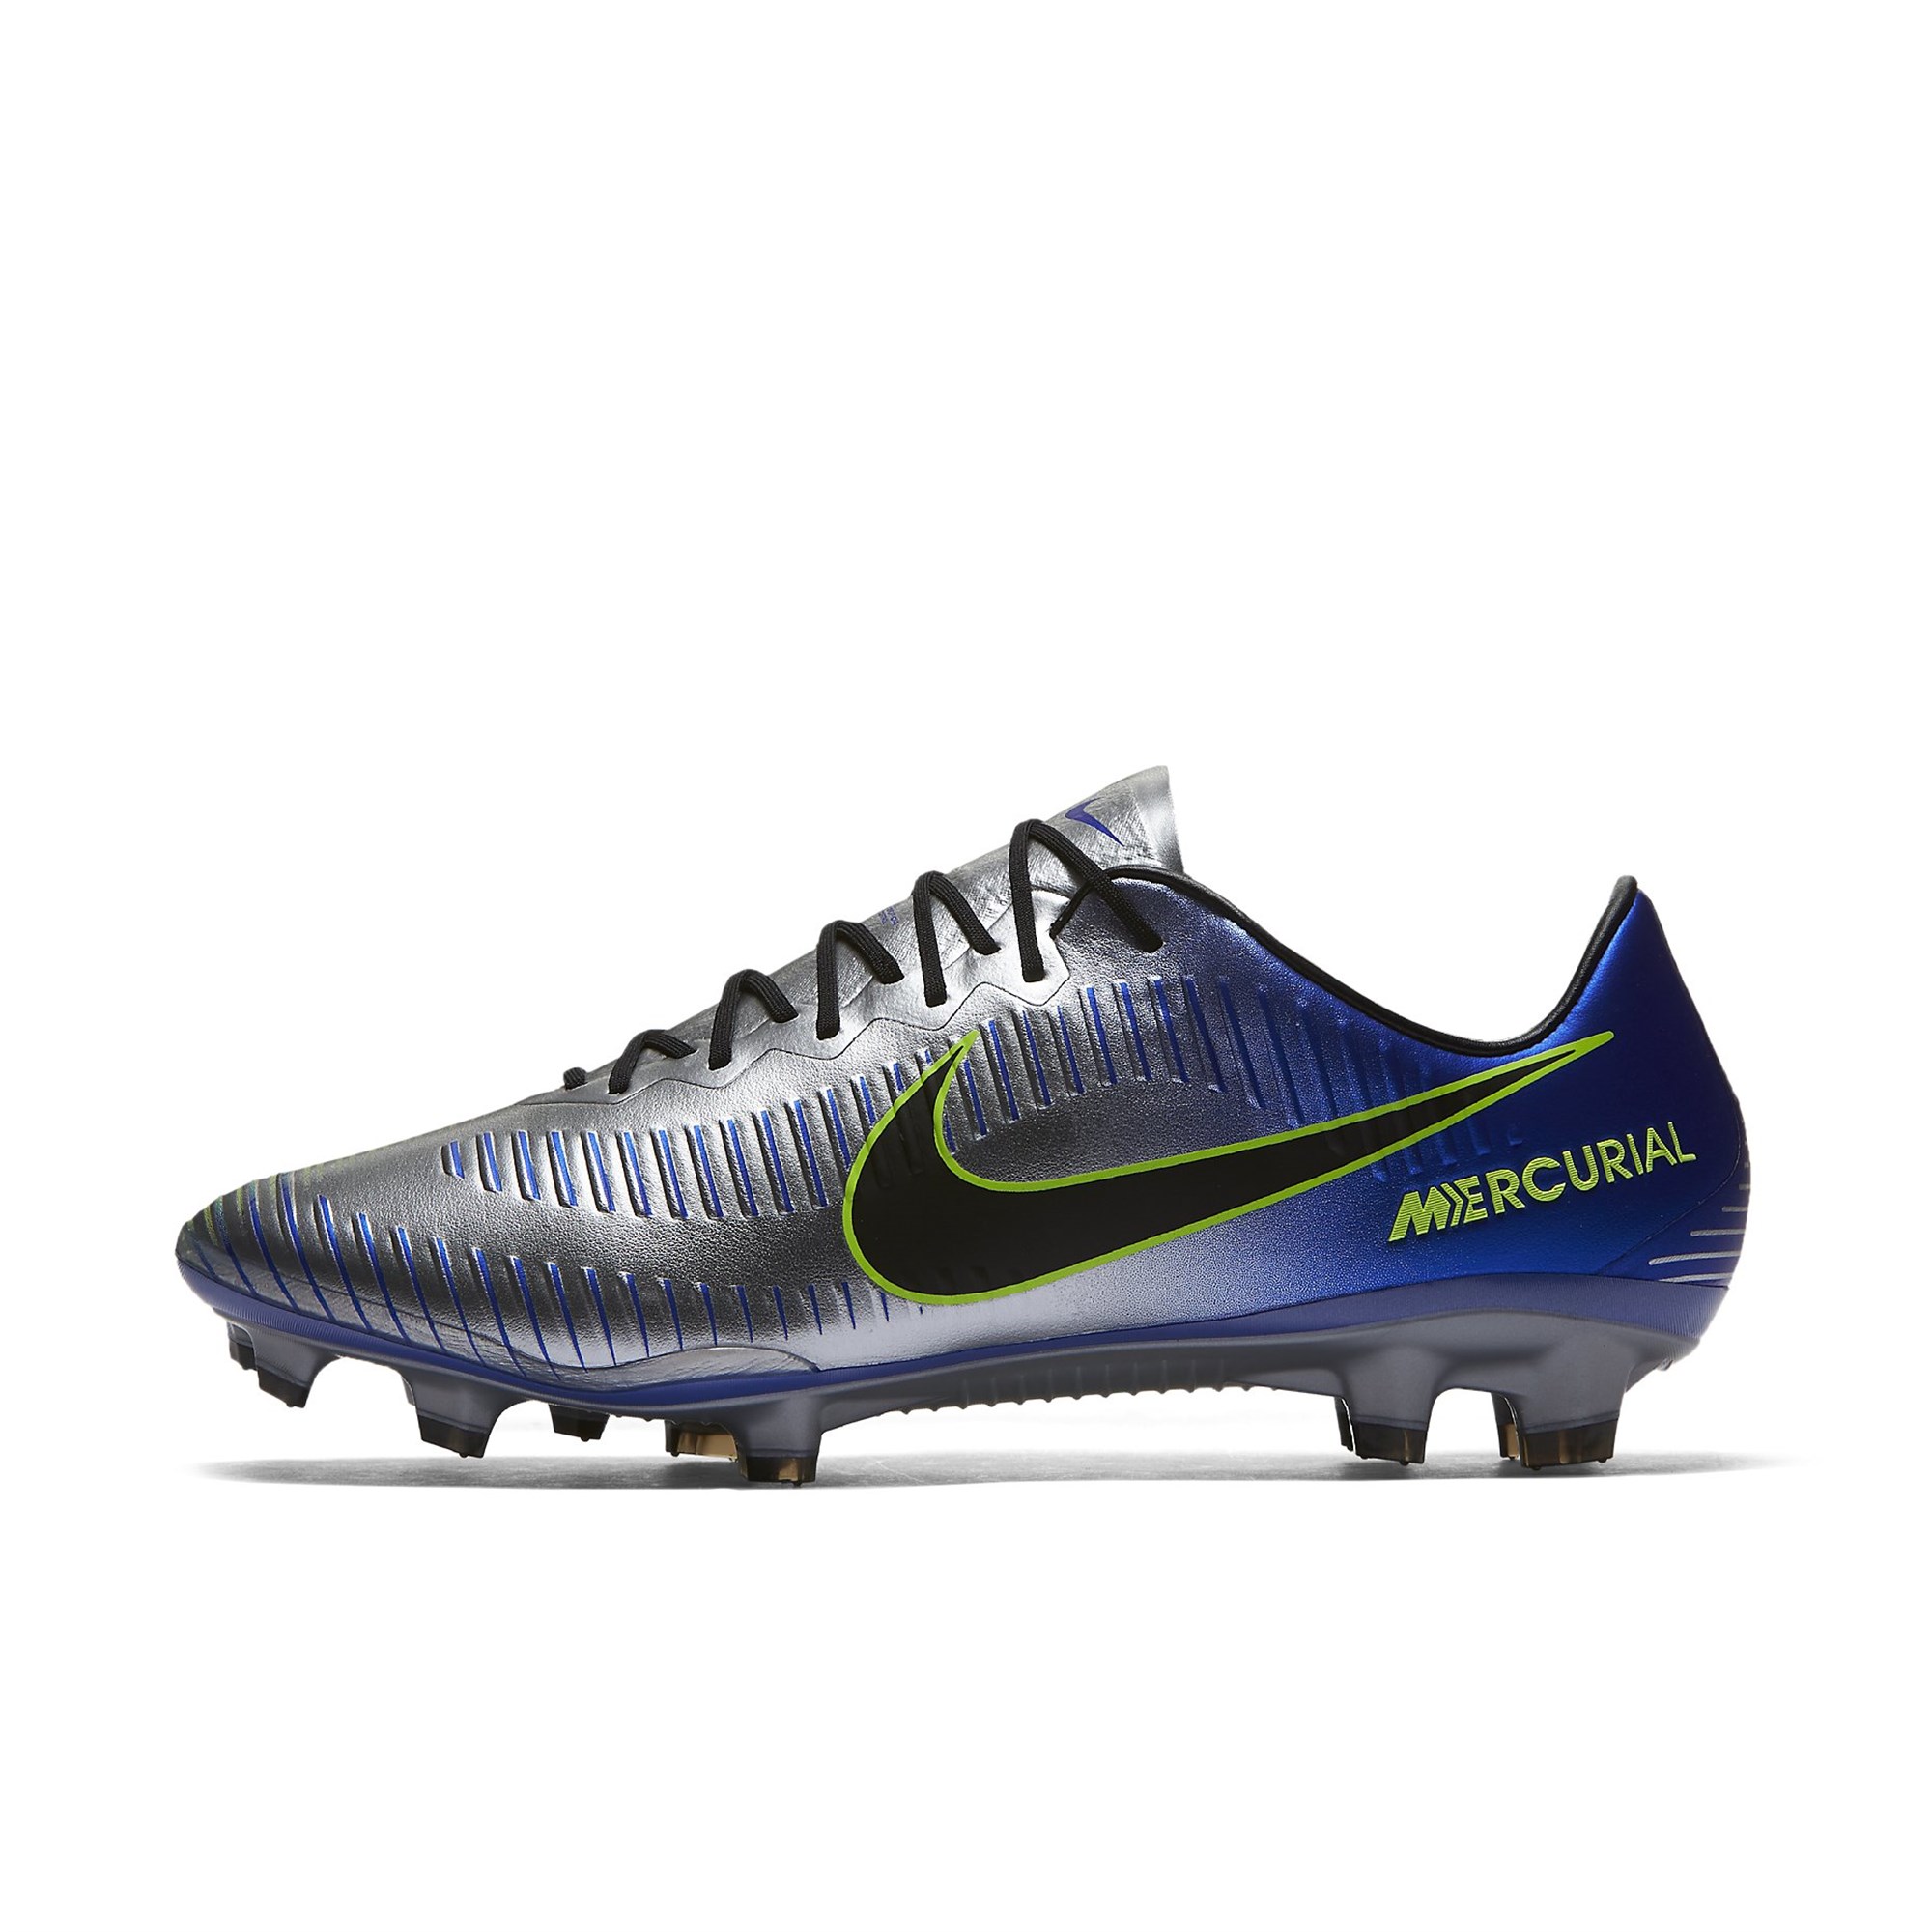 Nike Mercurial Vapor XI Neymar FG Erkek Krampon Ürün kodu: 921547-407 |  Etichet Sport